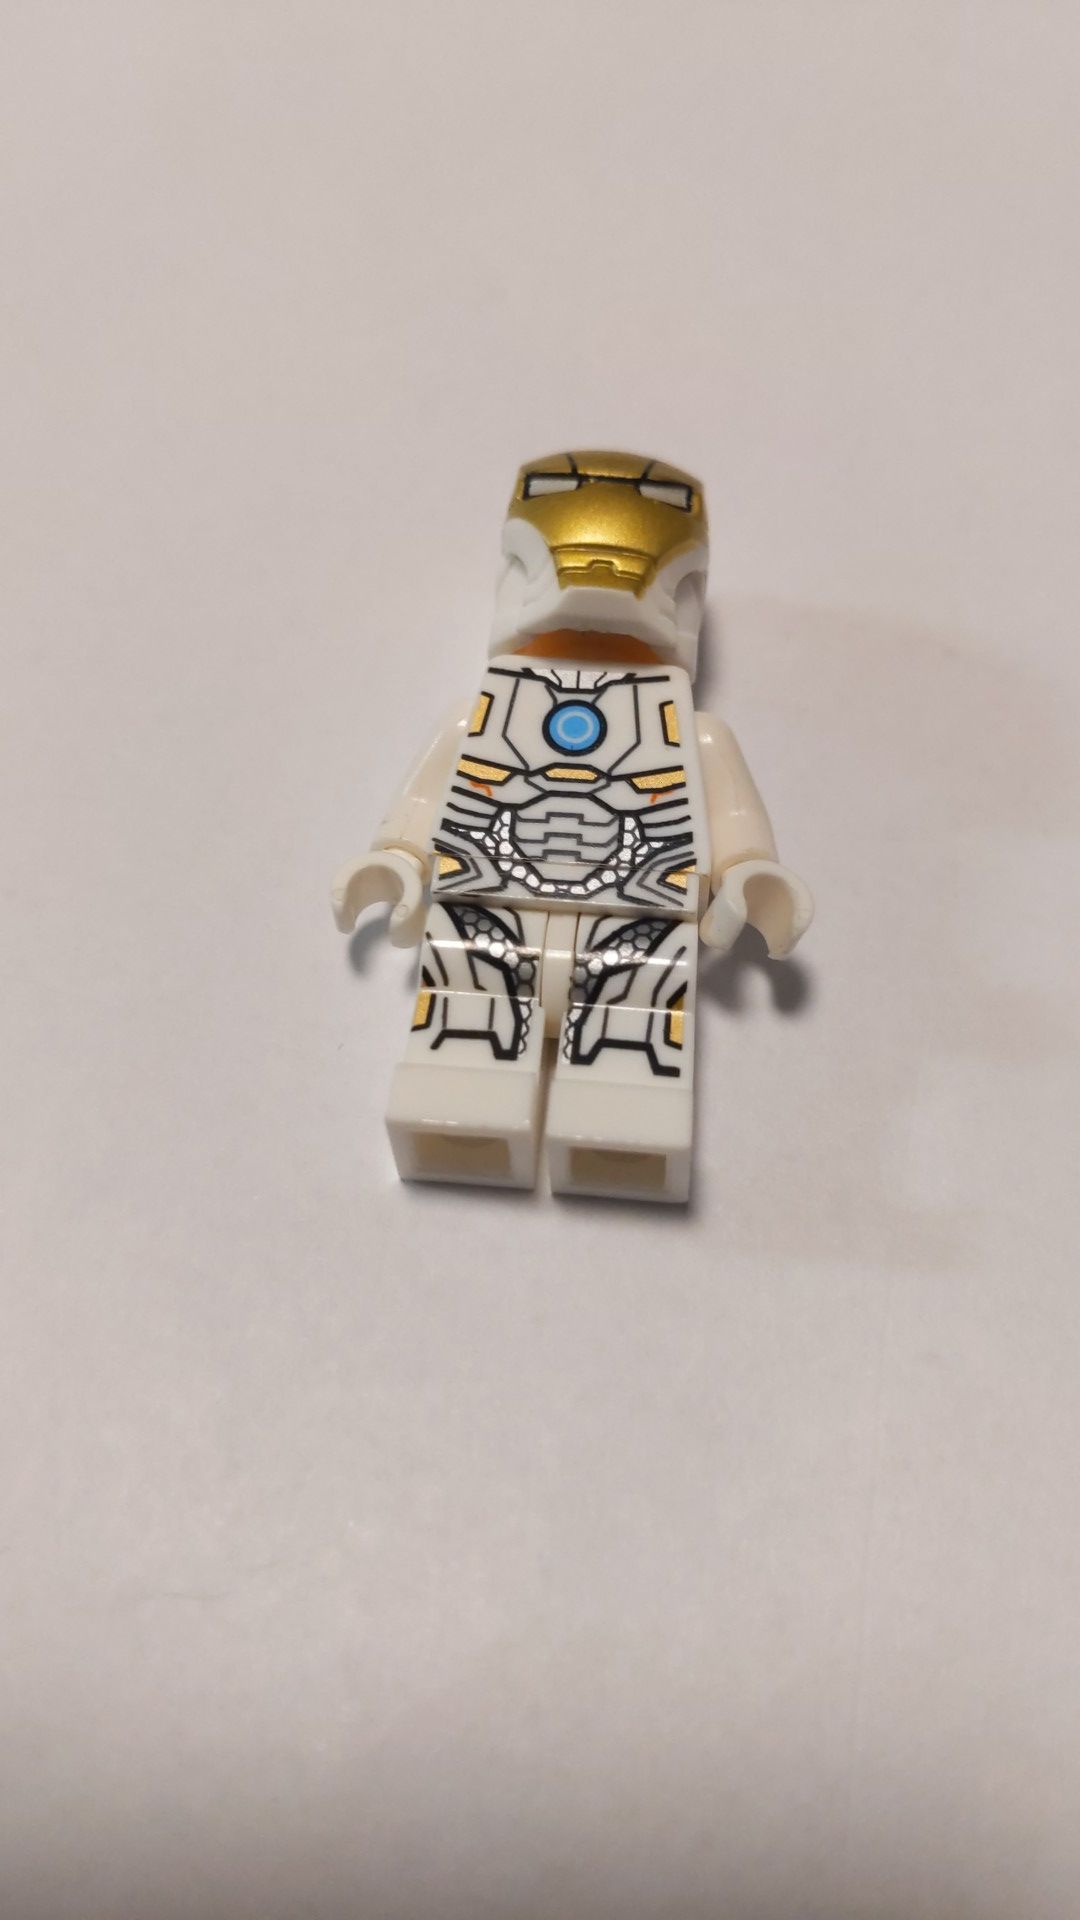 Lego avengers white Iron Man minifigure